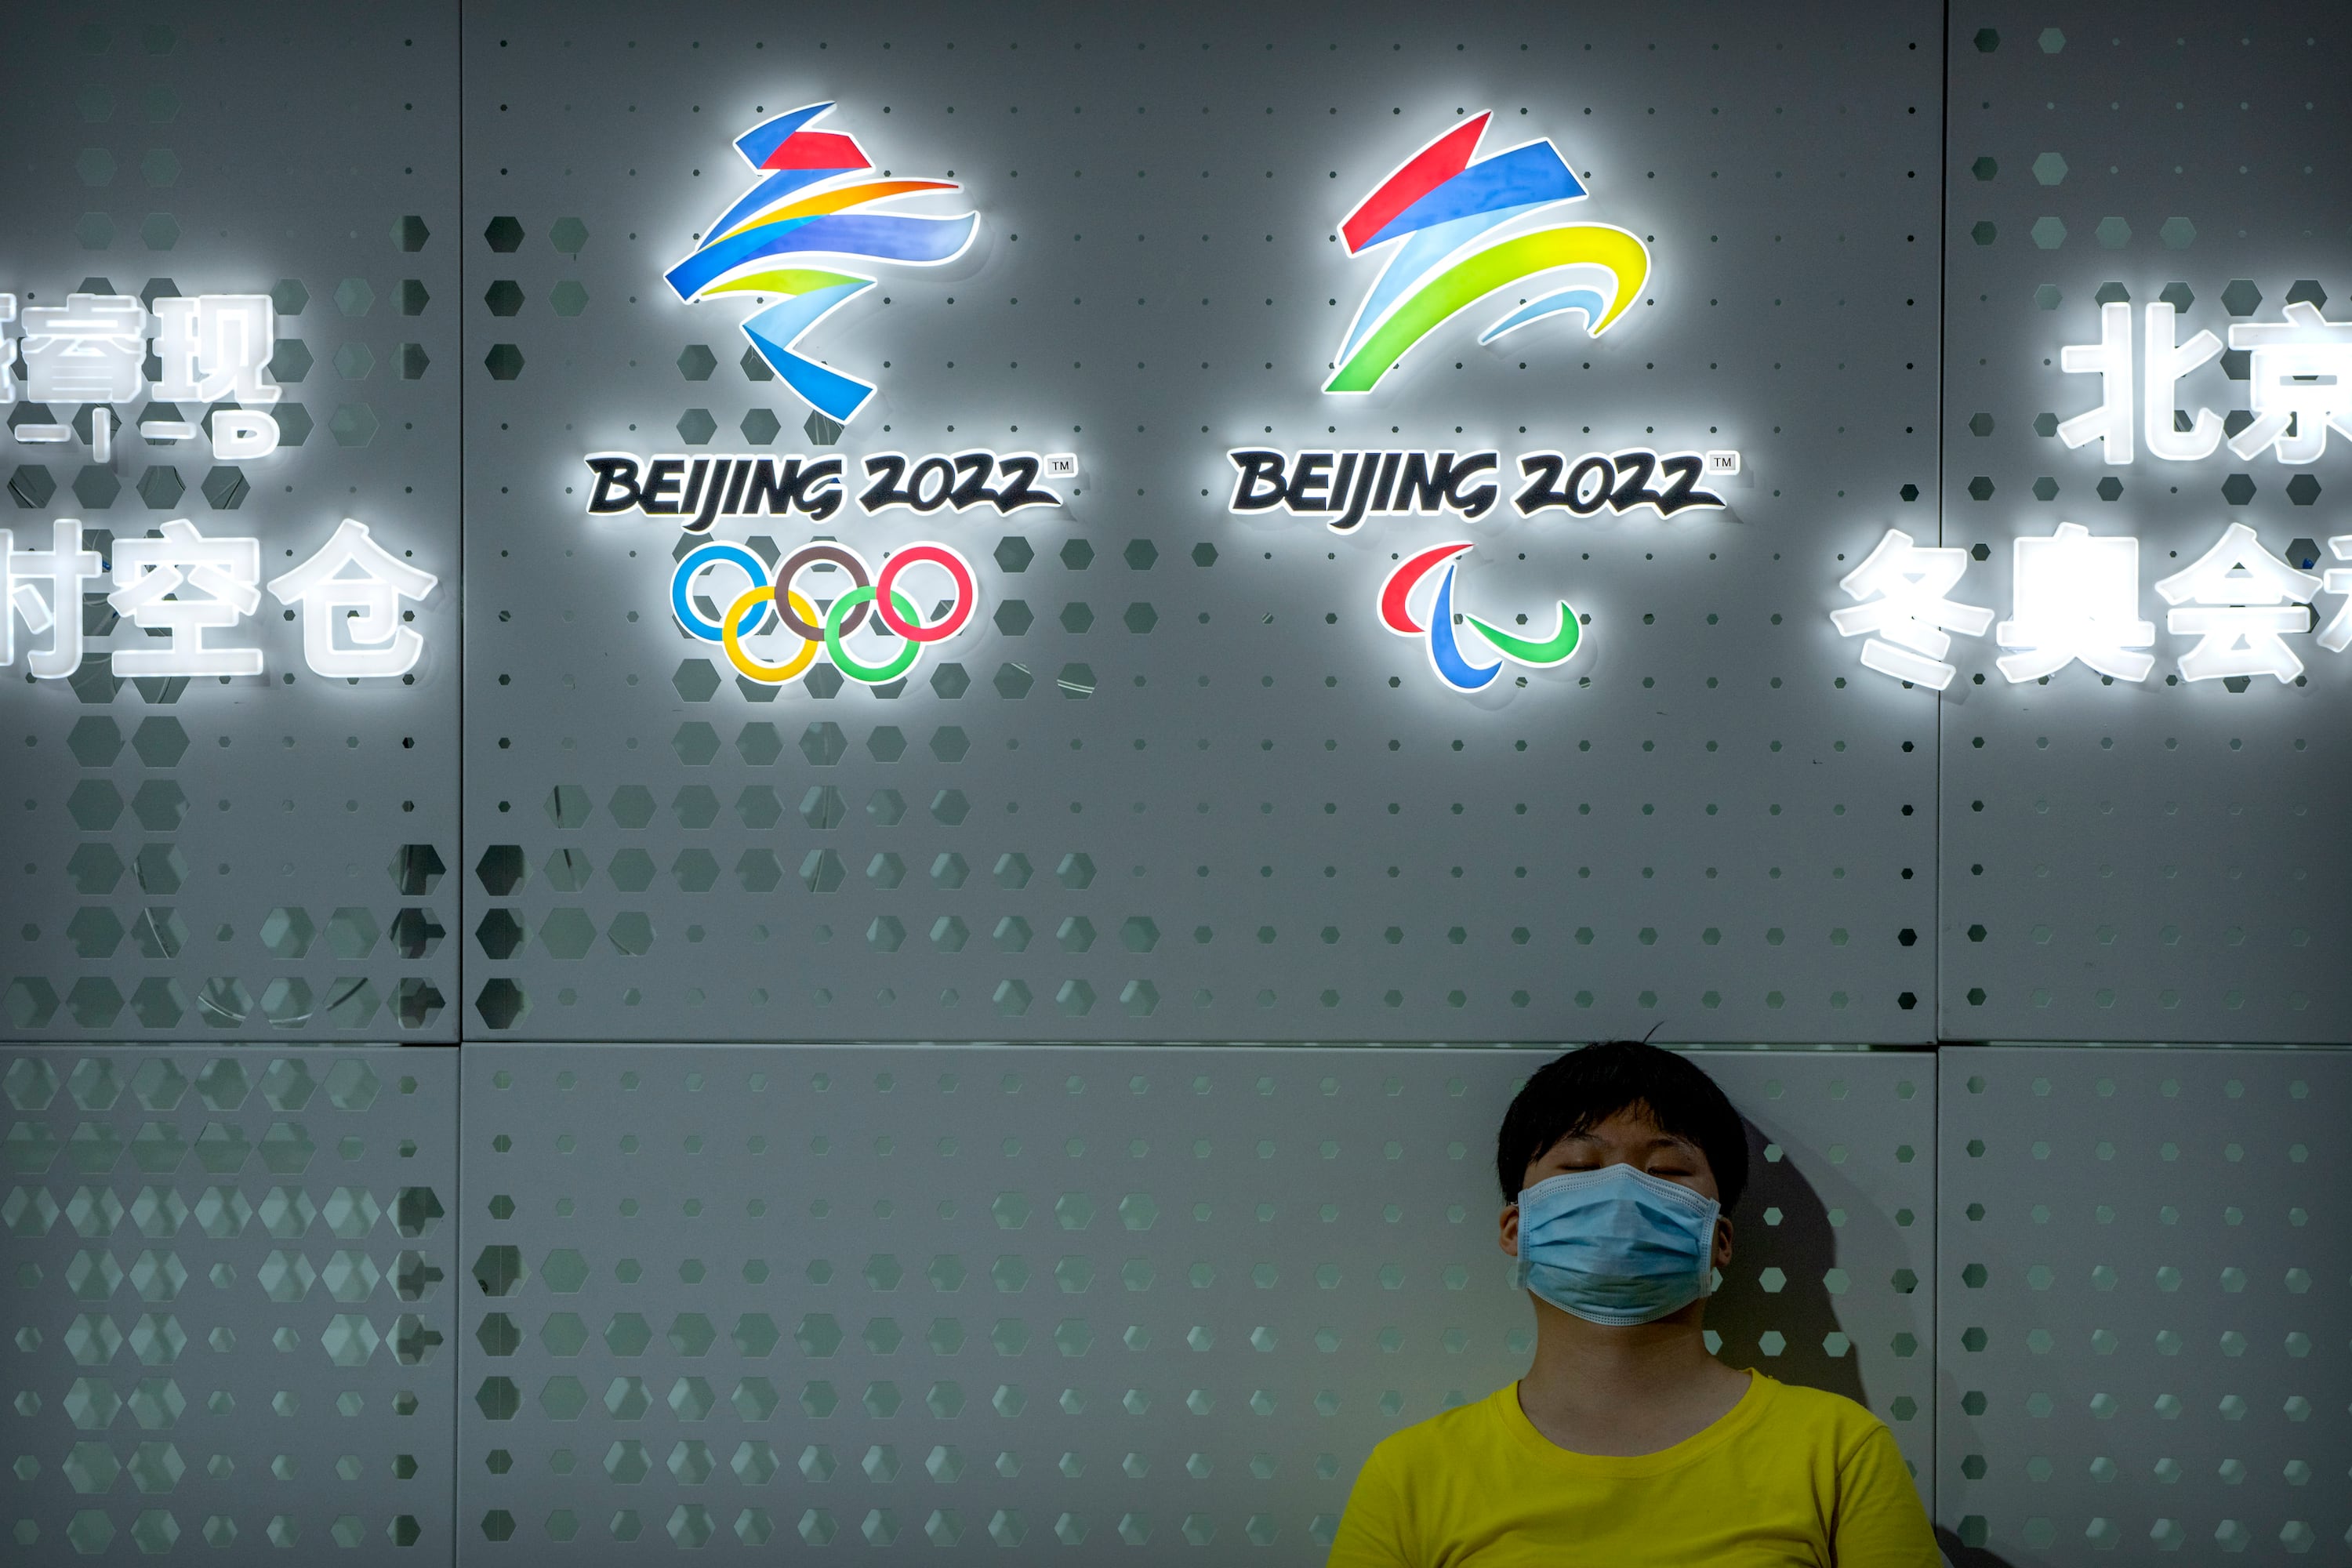 Pekin Olimpiyatlarının diplomatik boykotu, eleştirmenlerin yeterince ileri gitmediğini söylediği 'sembolik' bir hareket